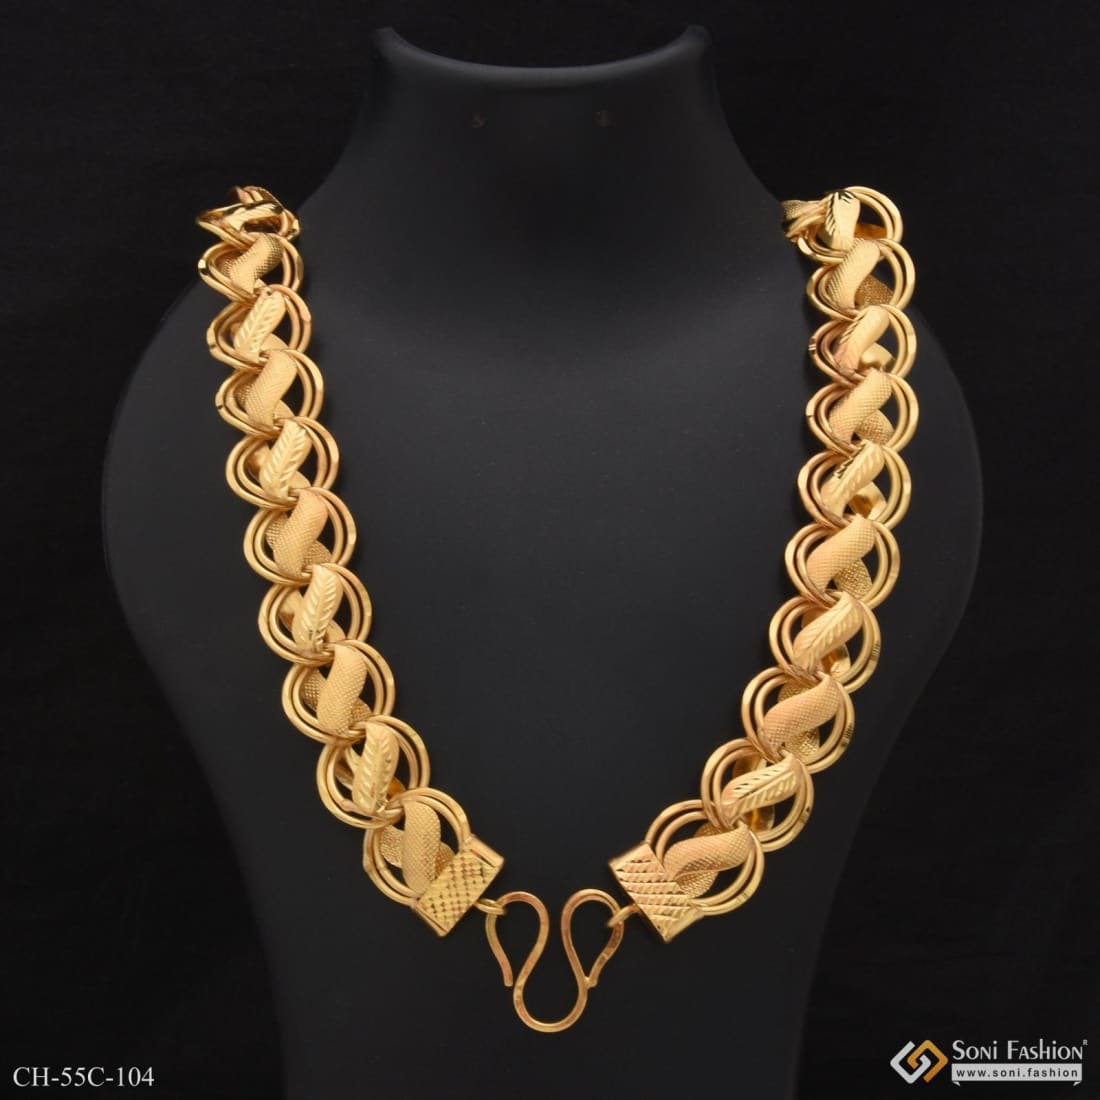 Sophia C Jewelry - Royal Hawaiian Necklace